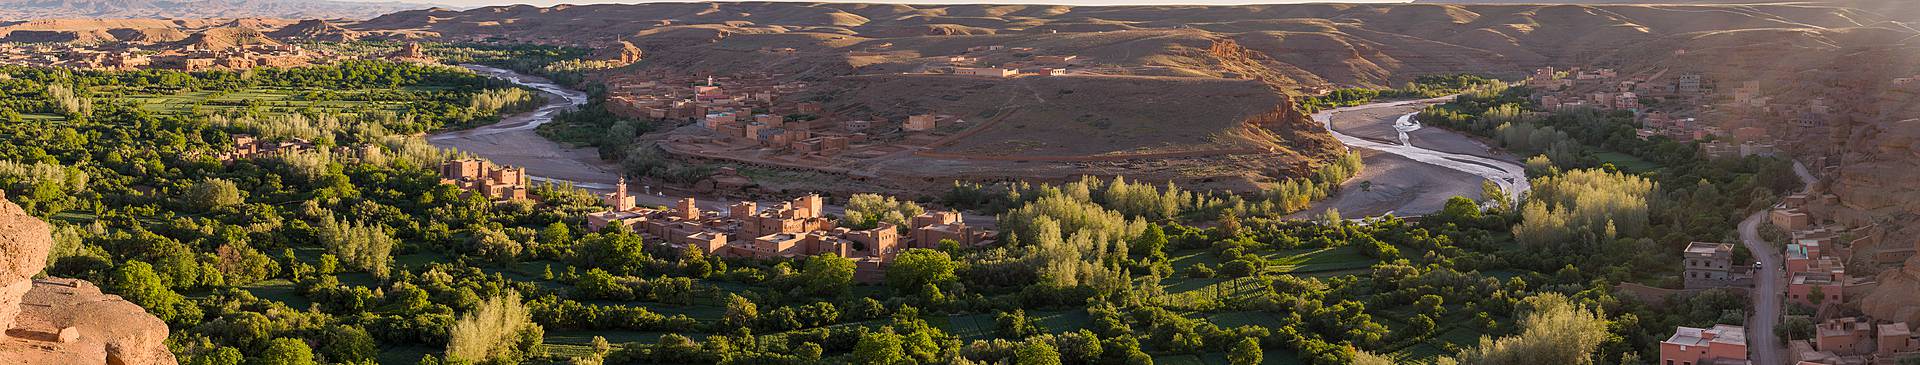 Morocco in June